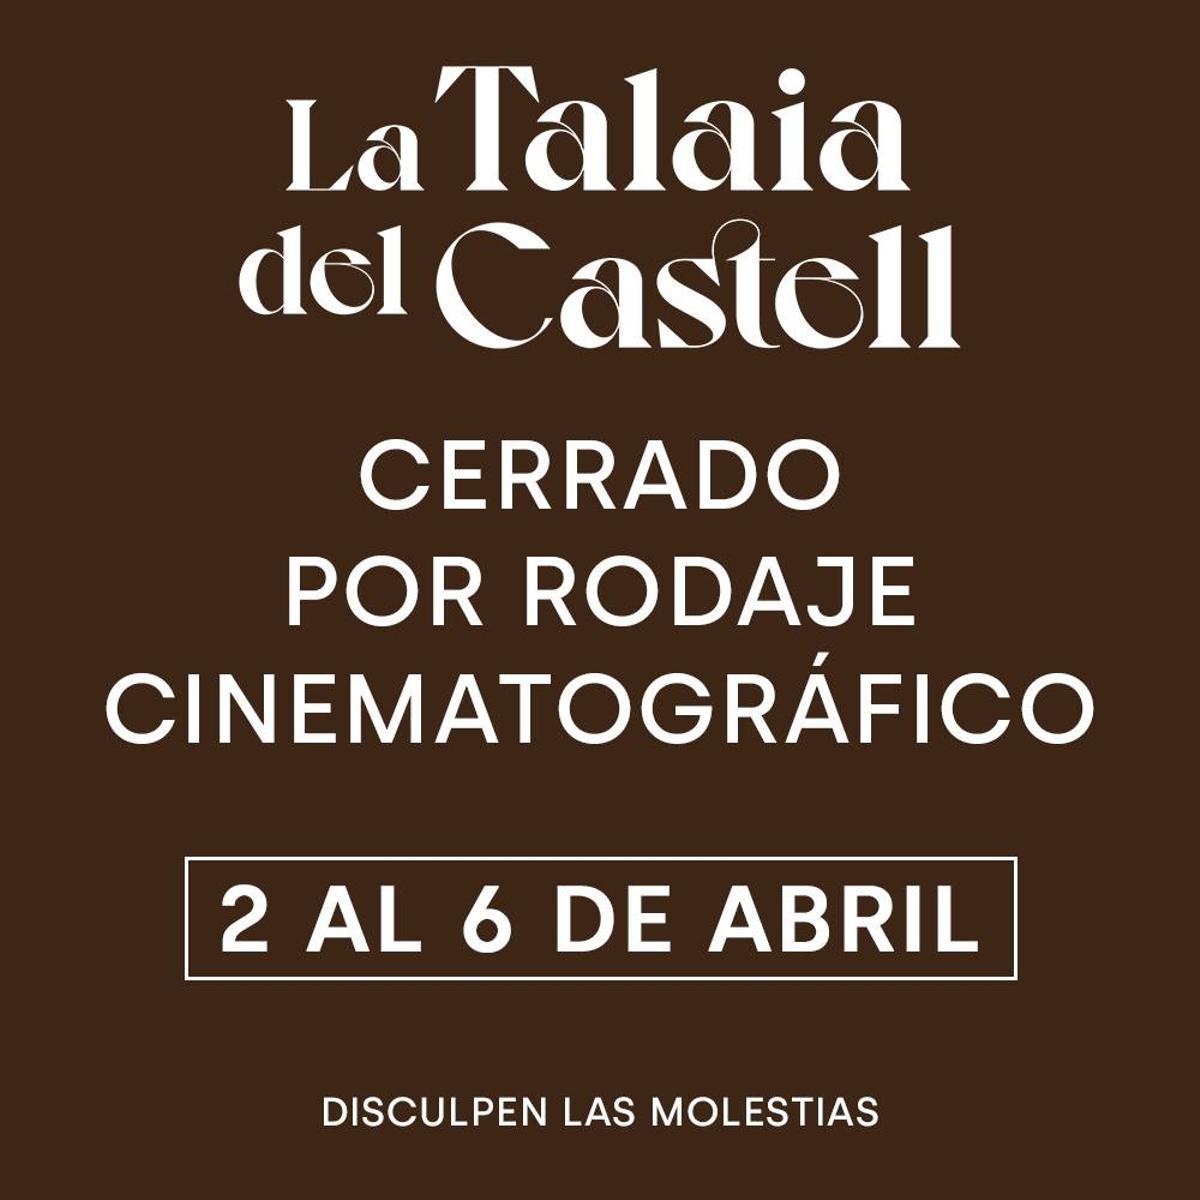 El restaurante La Talaia del Castell ha confirmado el cierre por redes sociales.